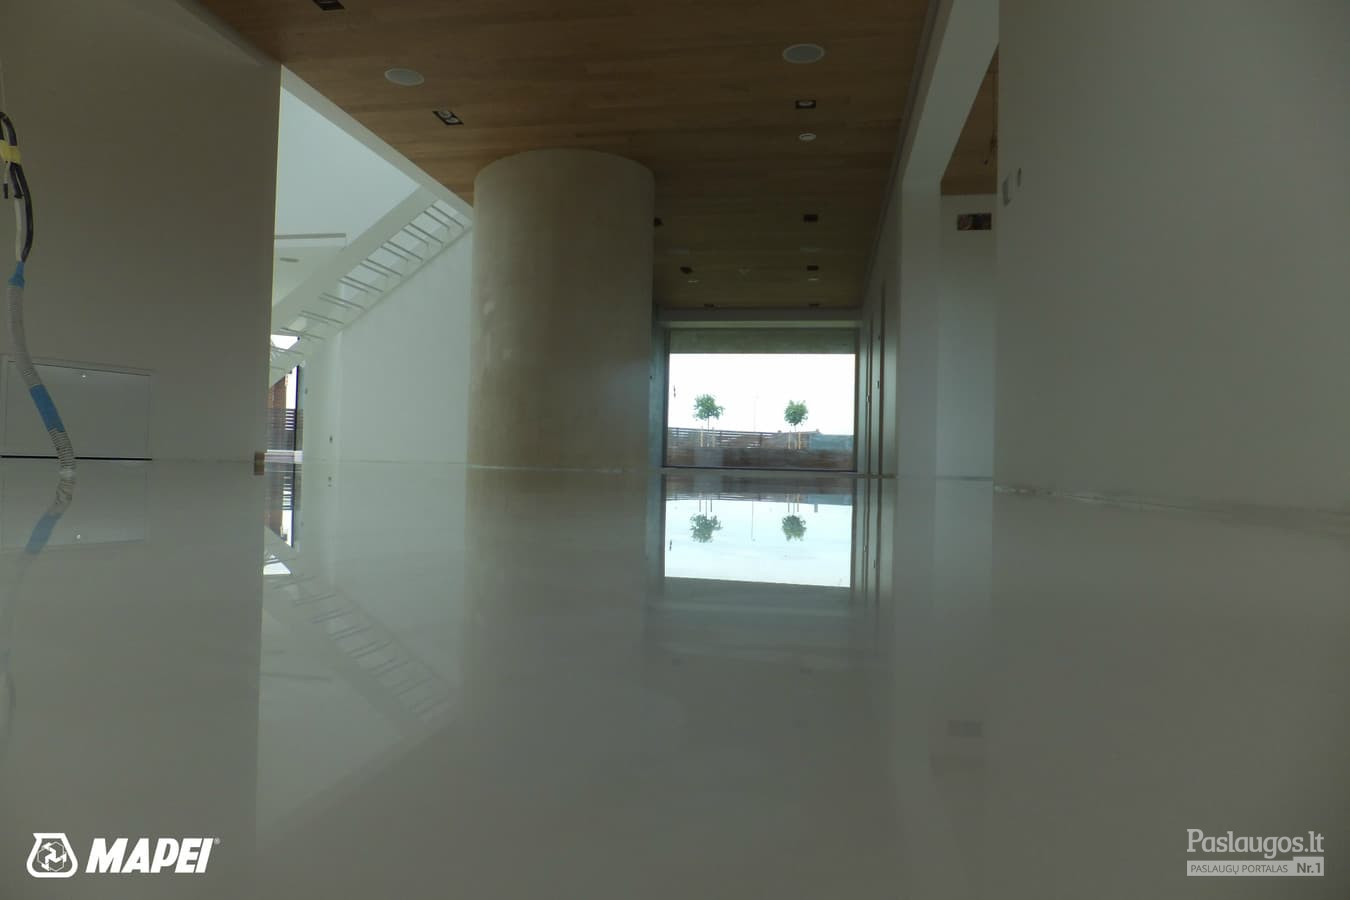 MAPEFLOOR SL savaime išsilyginanti epoksidinė grindų danga (balta) . Gyvenamasis namas.
http://www.mapei.com/public/NO/products/6732-mapefloorsl-lt.pdf